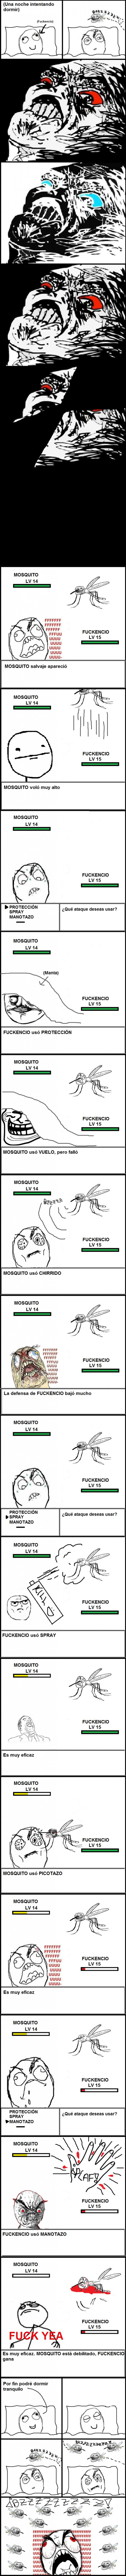 Mix - Fuckencio vs Mosquito